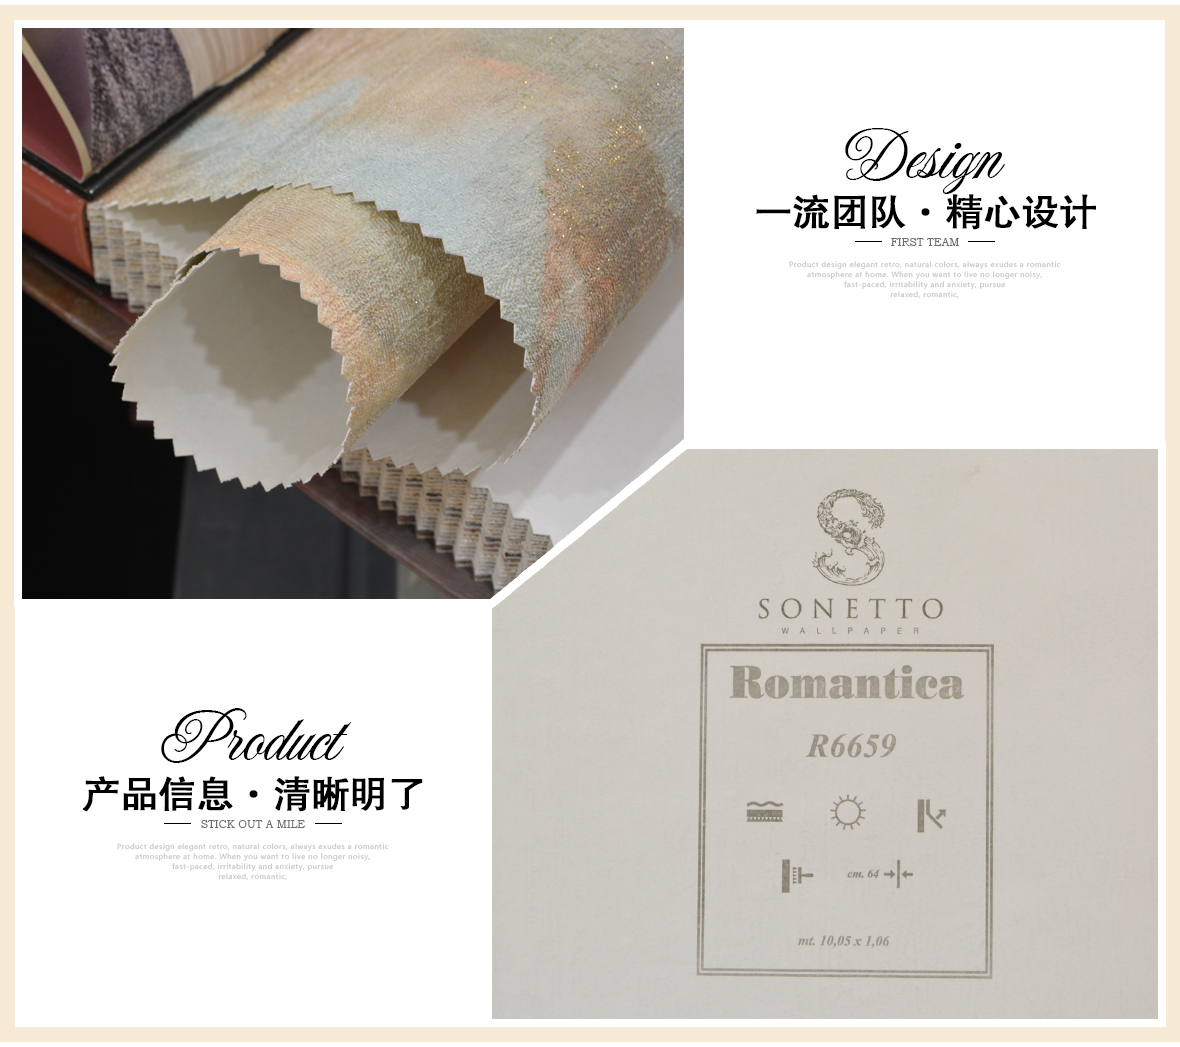 精厚壁纸 R6659型号意大利进口环保纸基壁纸墙纸 细节展示